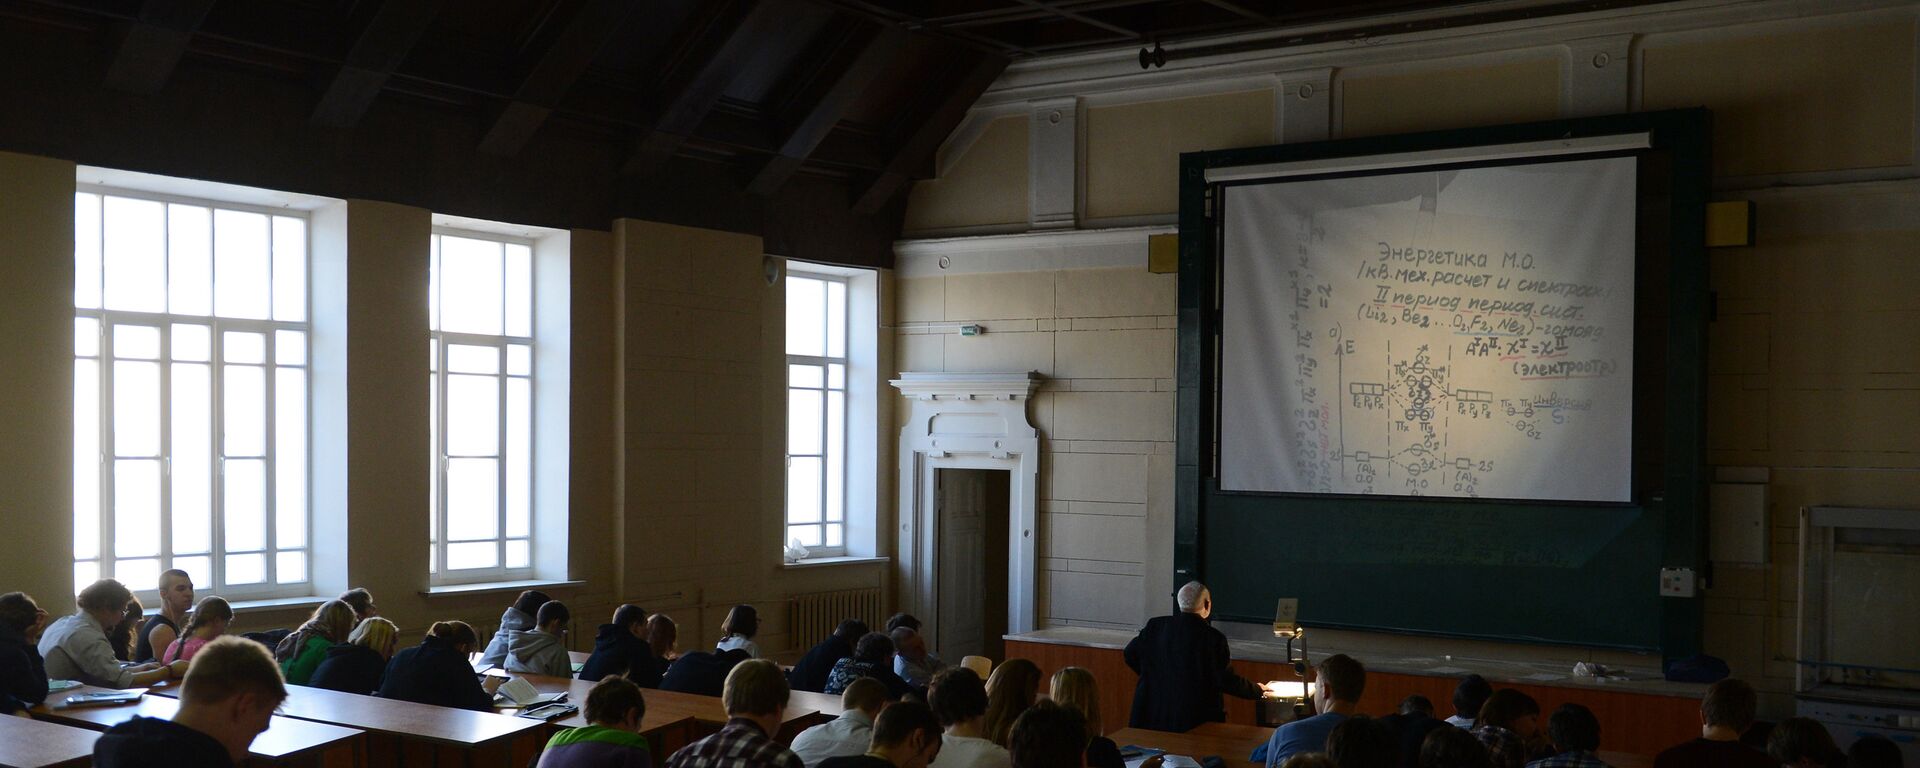 Студенты на лекции - Sputnik Латвия, 1920, 04.08.2021